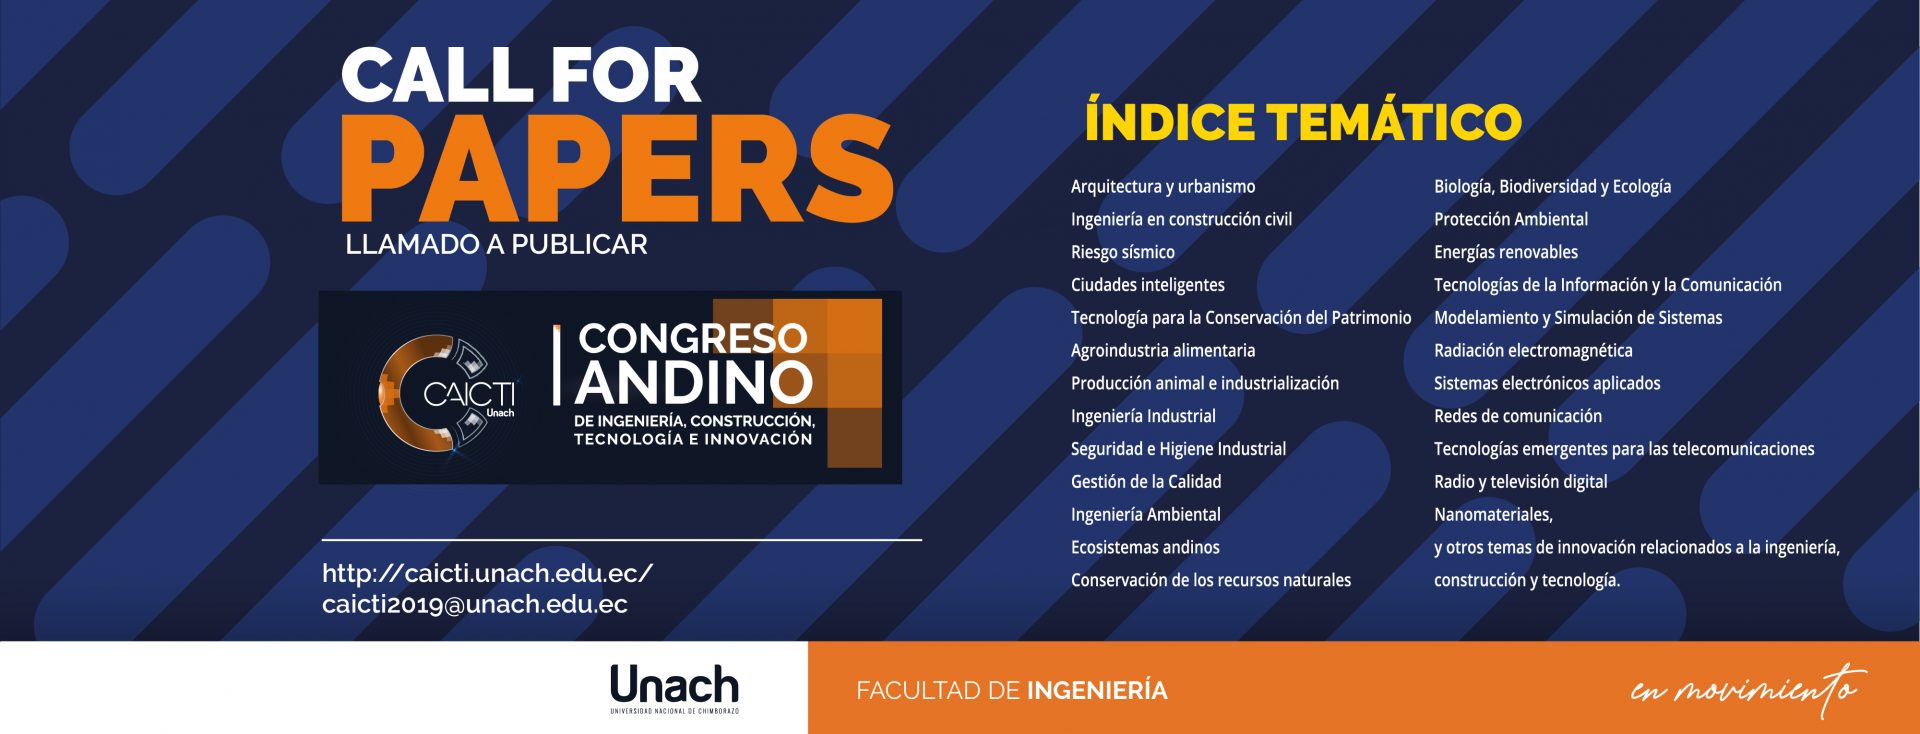 CALL FOR PAPERS, LLAMADO A PUBLICAR CONGRESO ANDINO DE INGENIERÍA, CONSTRUCCIÓN, TECNOLOGÍA E INNOVACIÓN